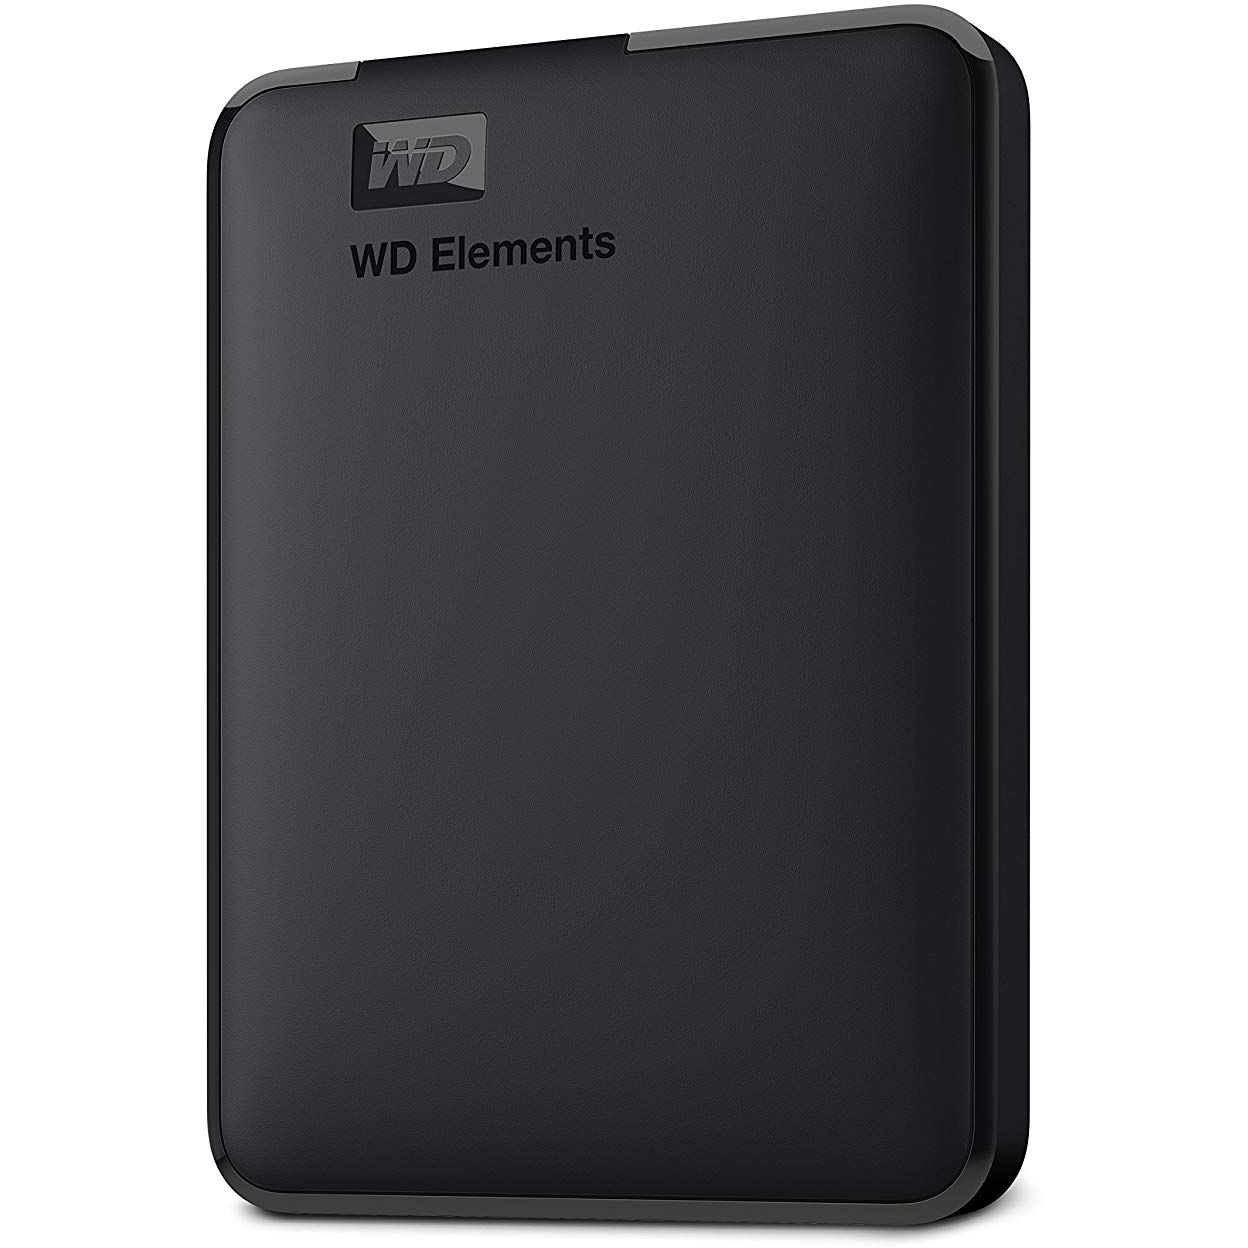 Original Western Digital Elements 500GB Black USB 3.0 External Hard Drive (WDBUZG5000ABK-WESN)